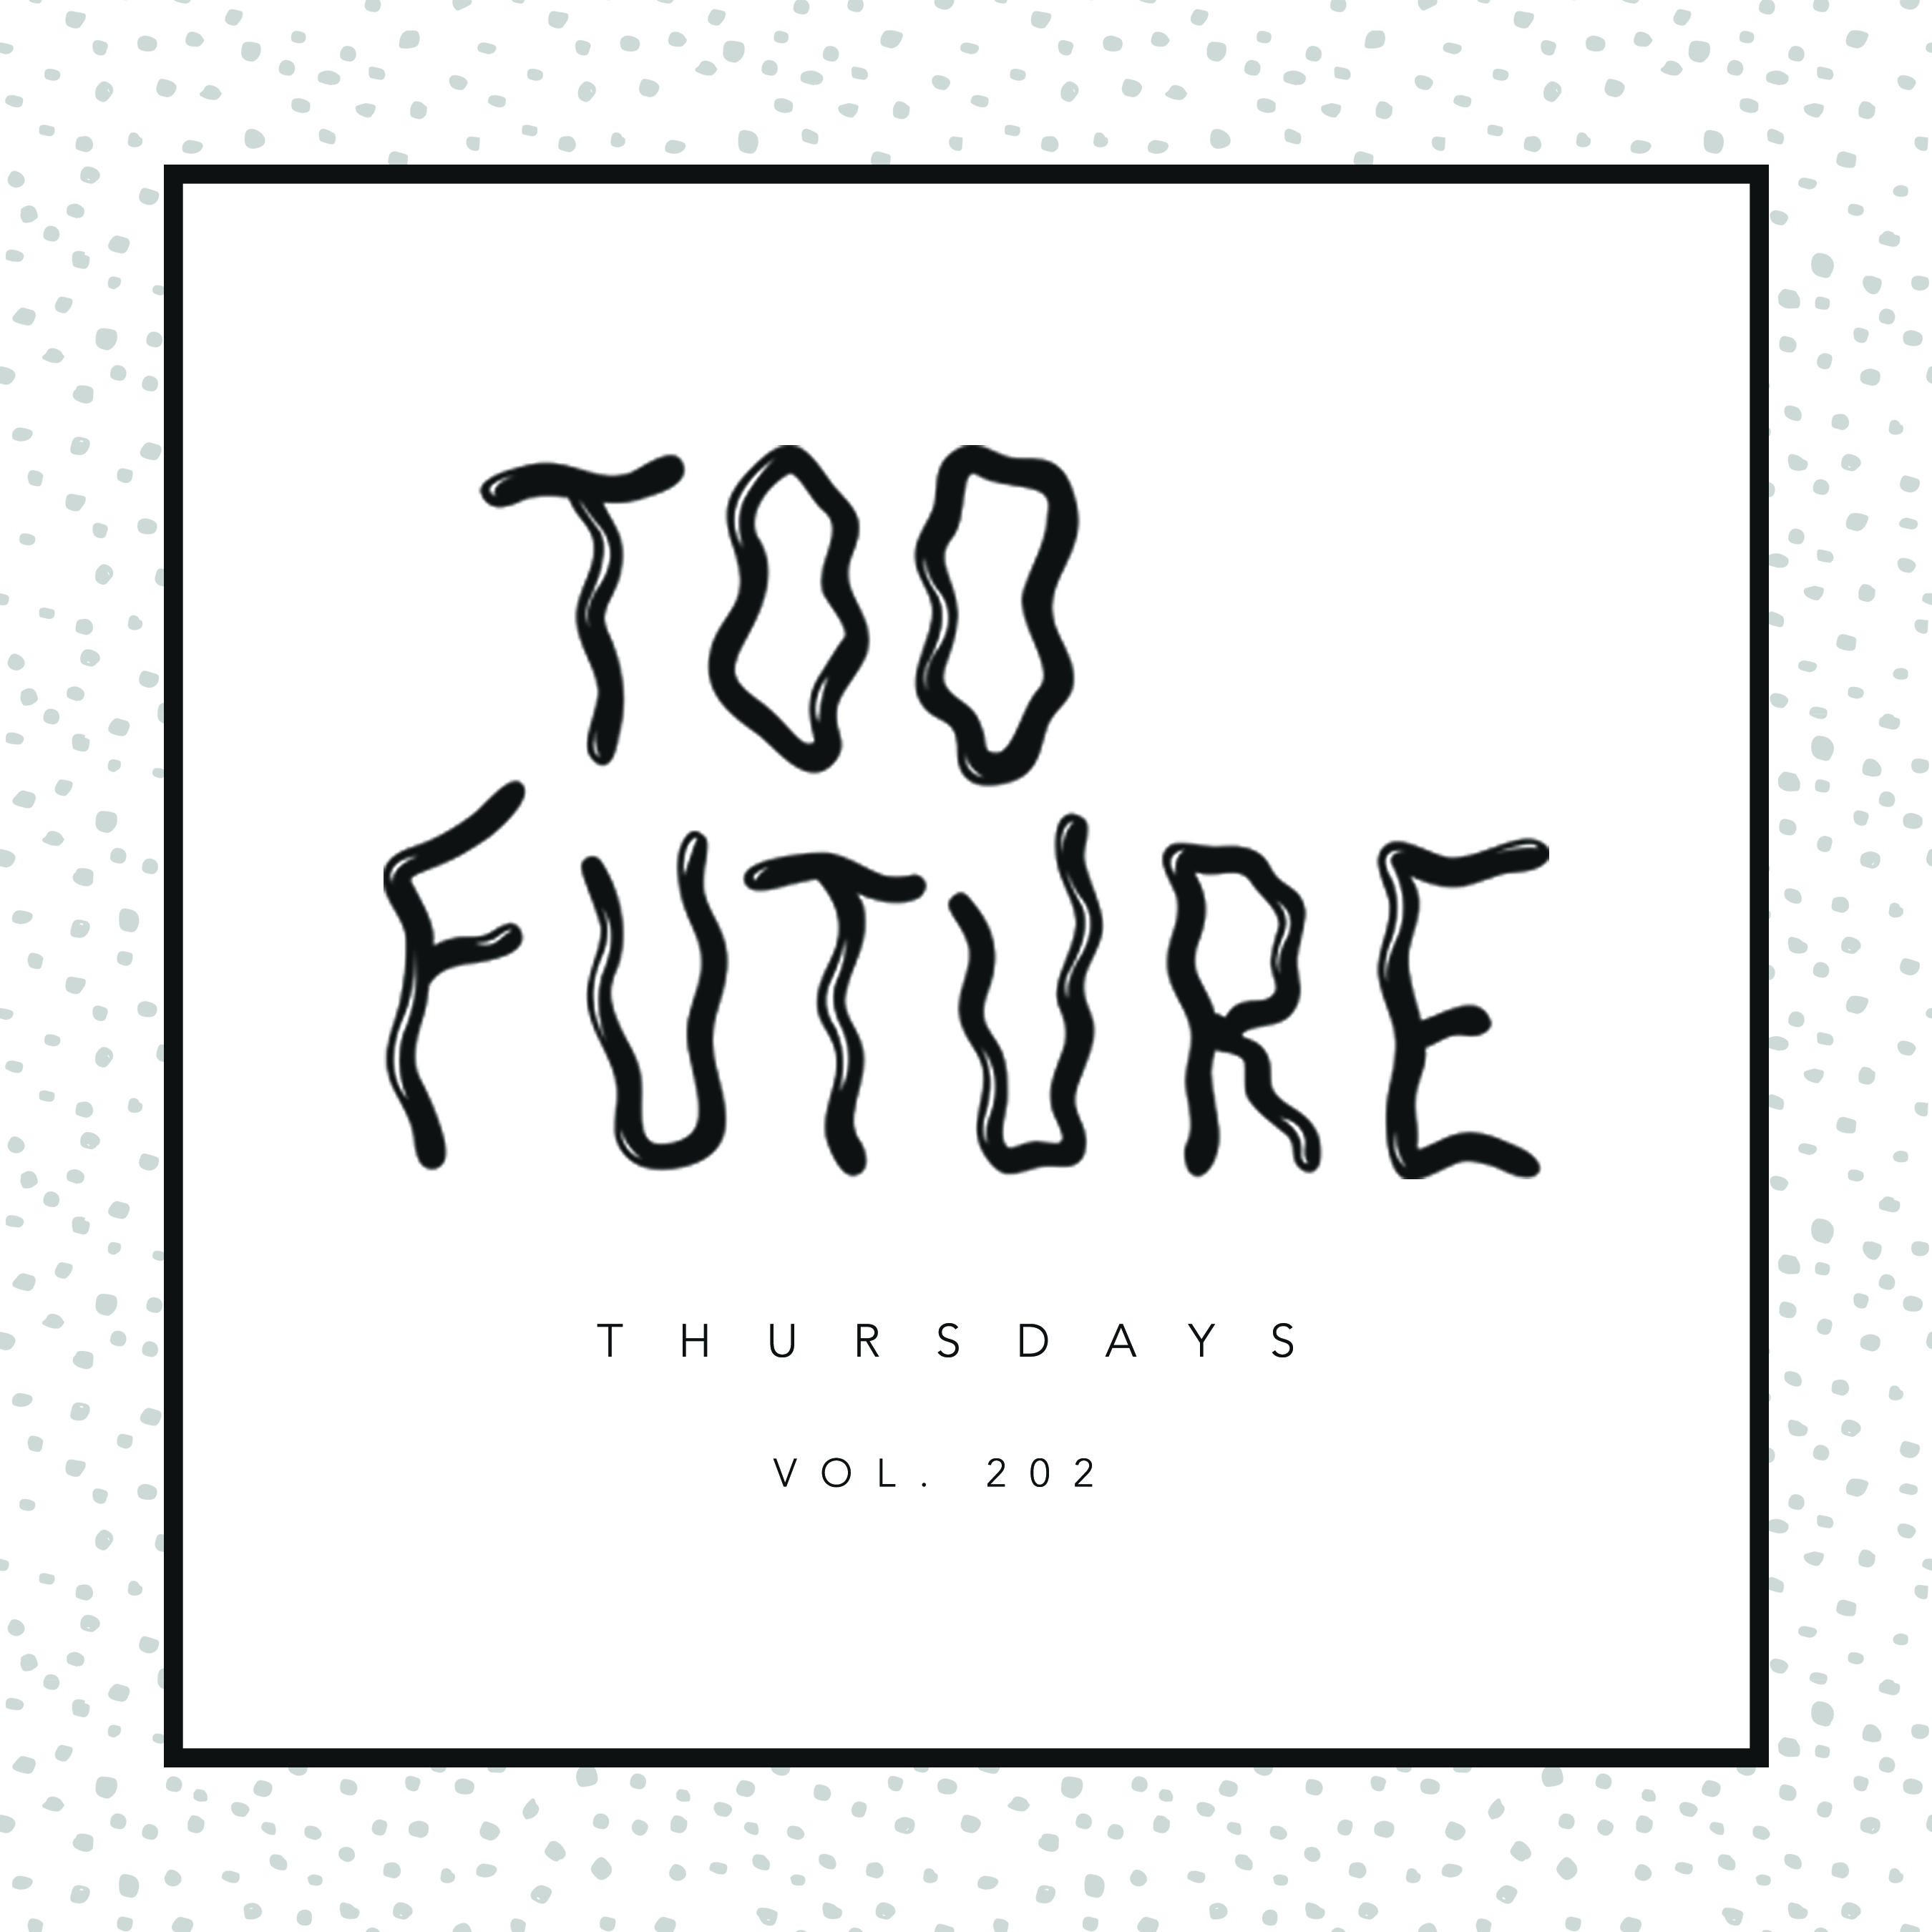 too-future-thursdays-vol-202